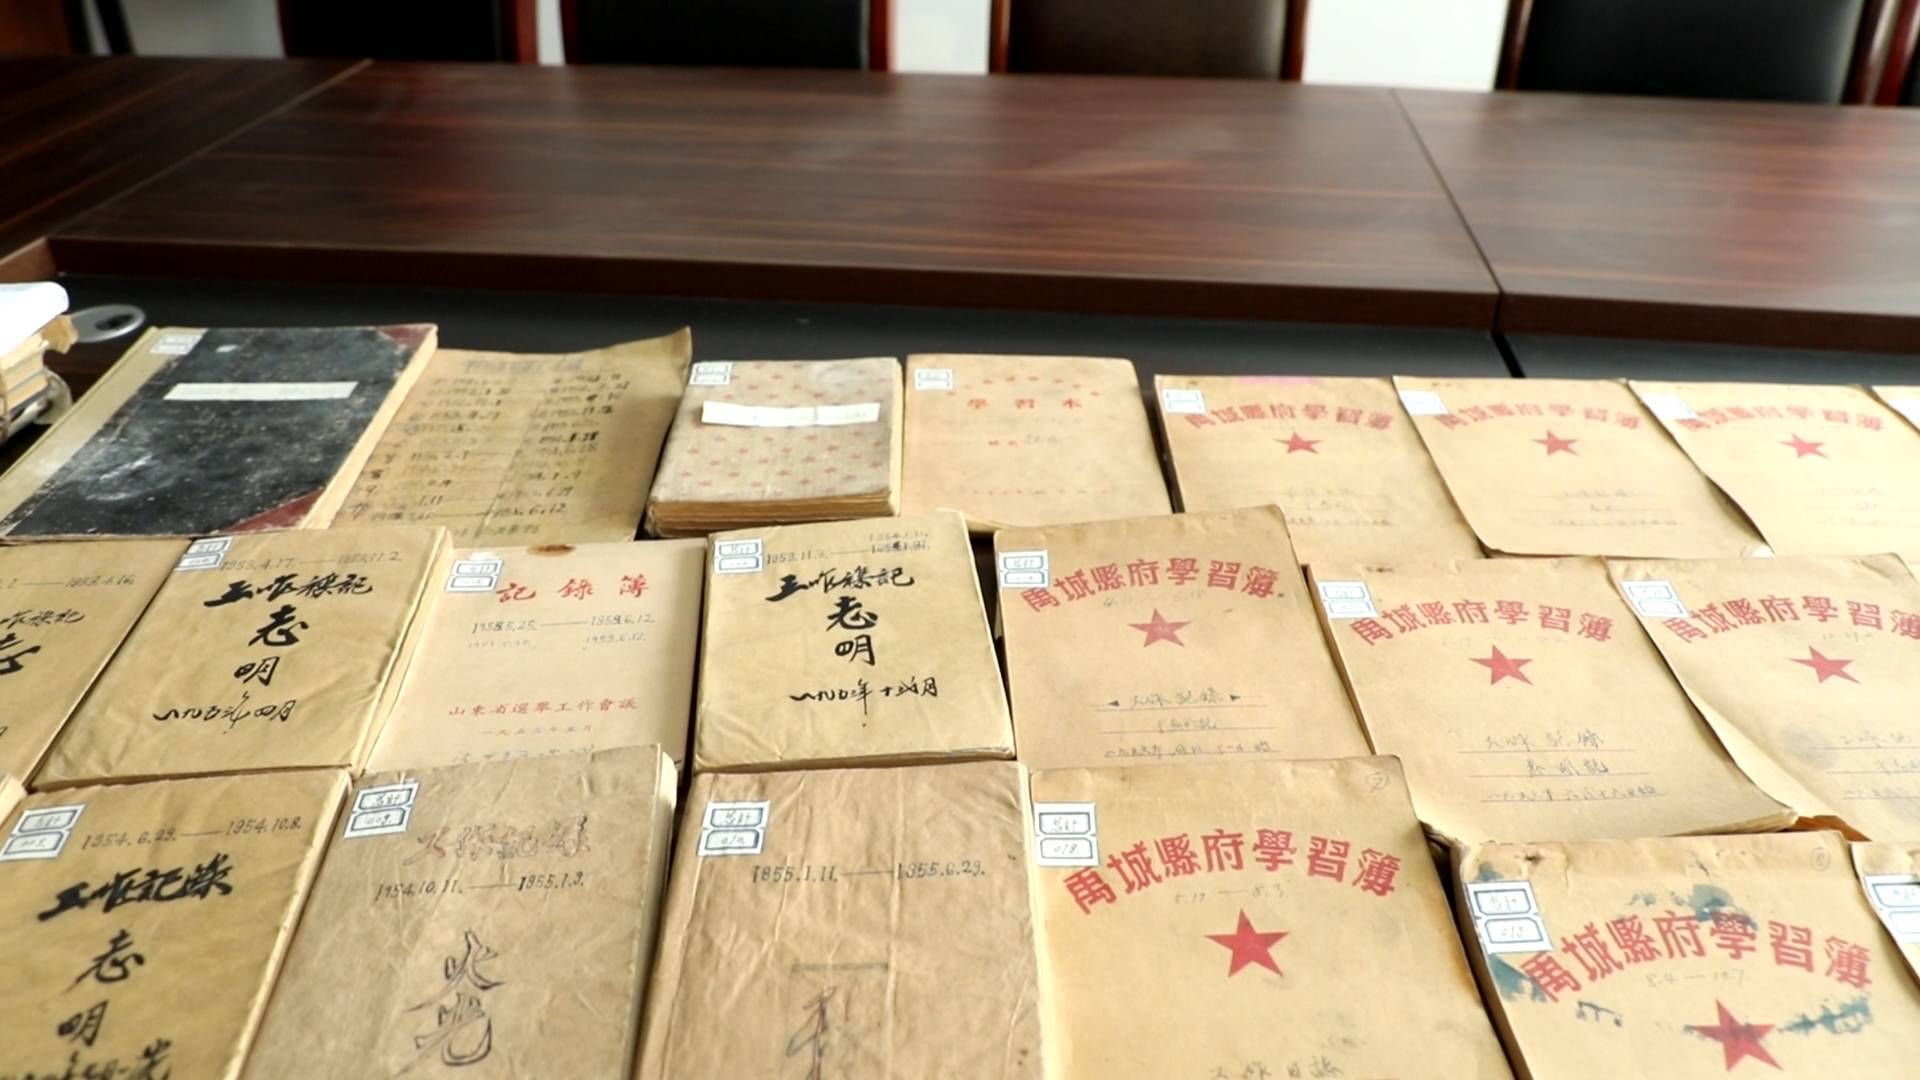 121秒｜禹城老党员捐赠91本工作日记 从1951年到1978年记录社会变革城市变化